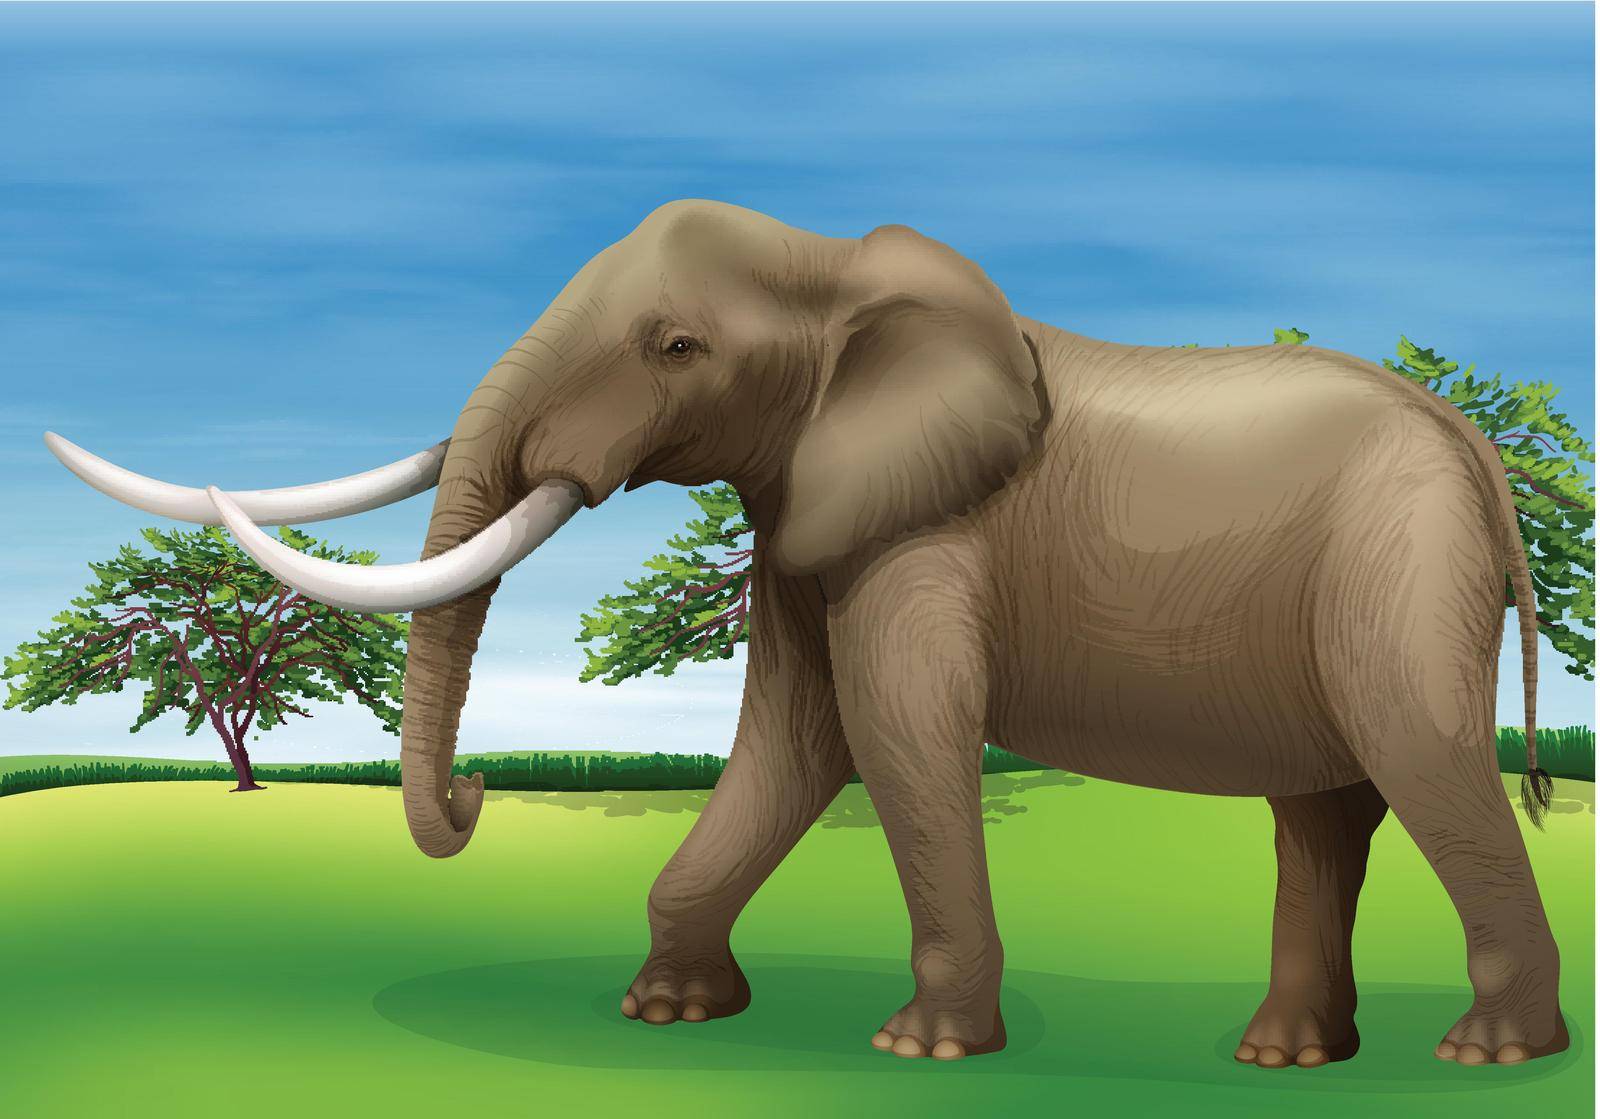 Illustration of the elephant